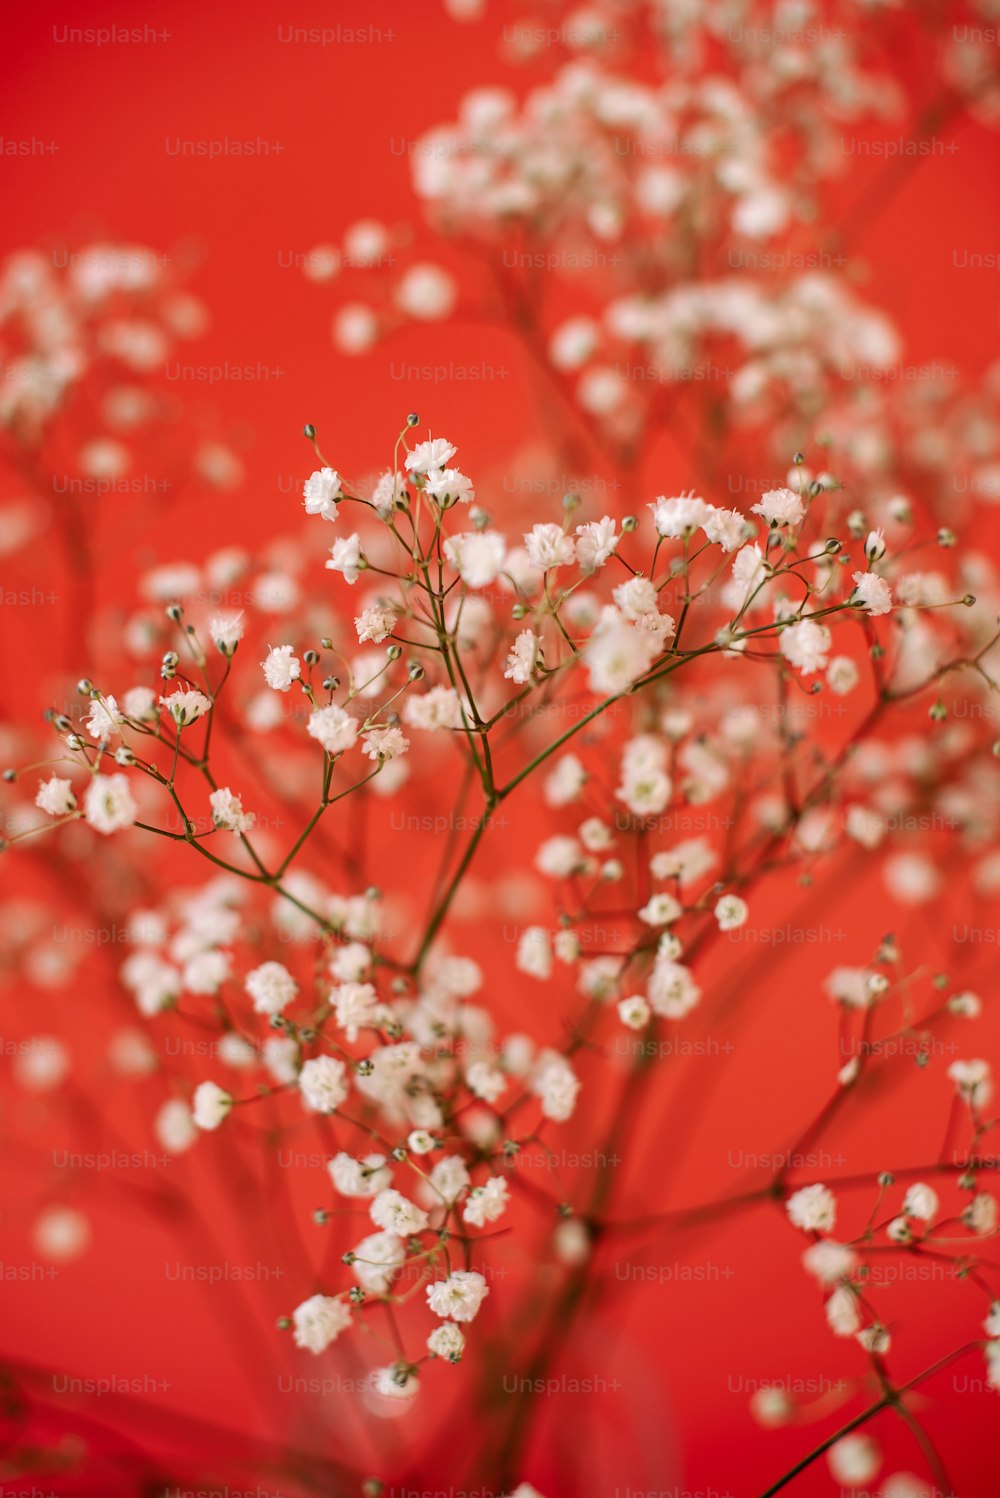 빨간색 바탕에 작은 흰색 꽃 무리